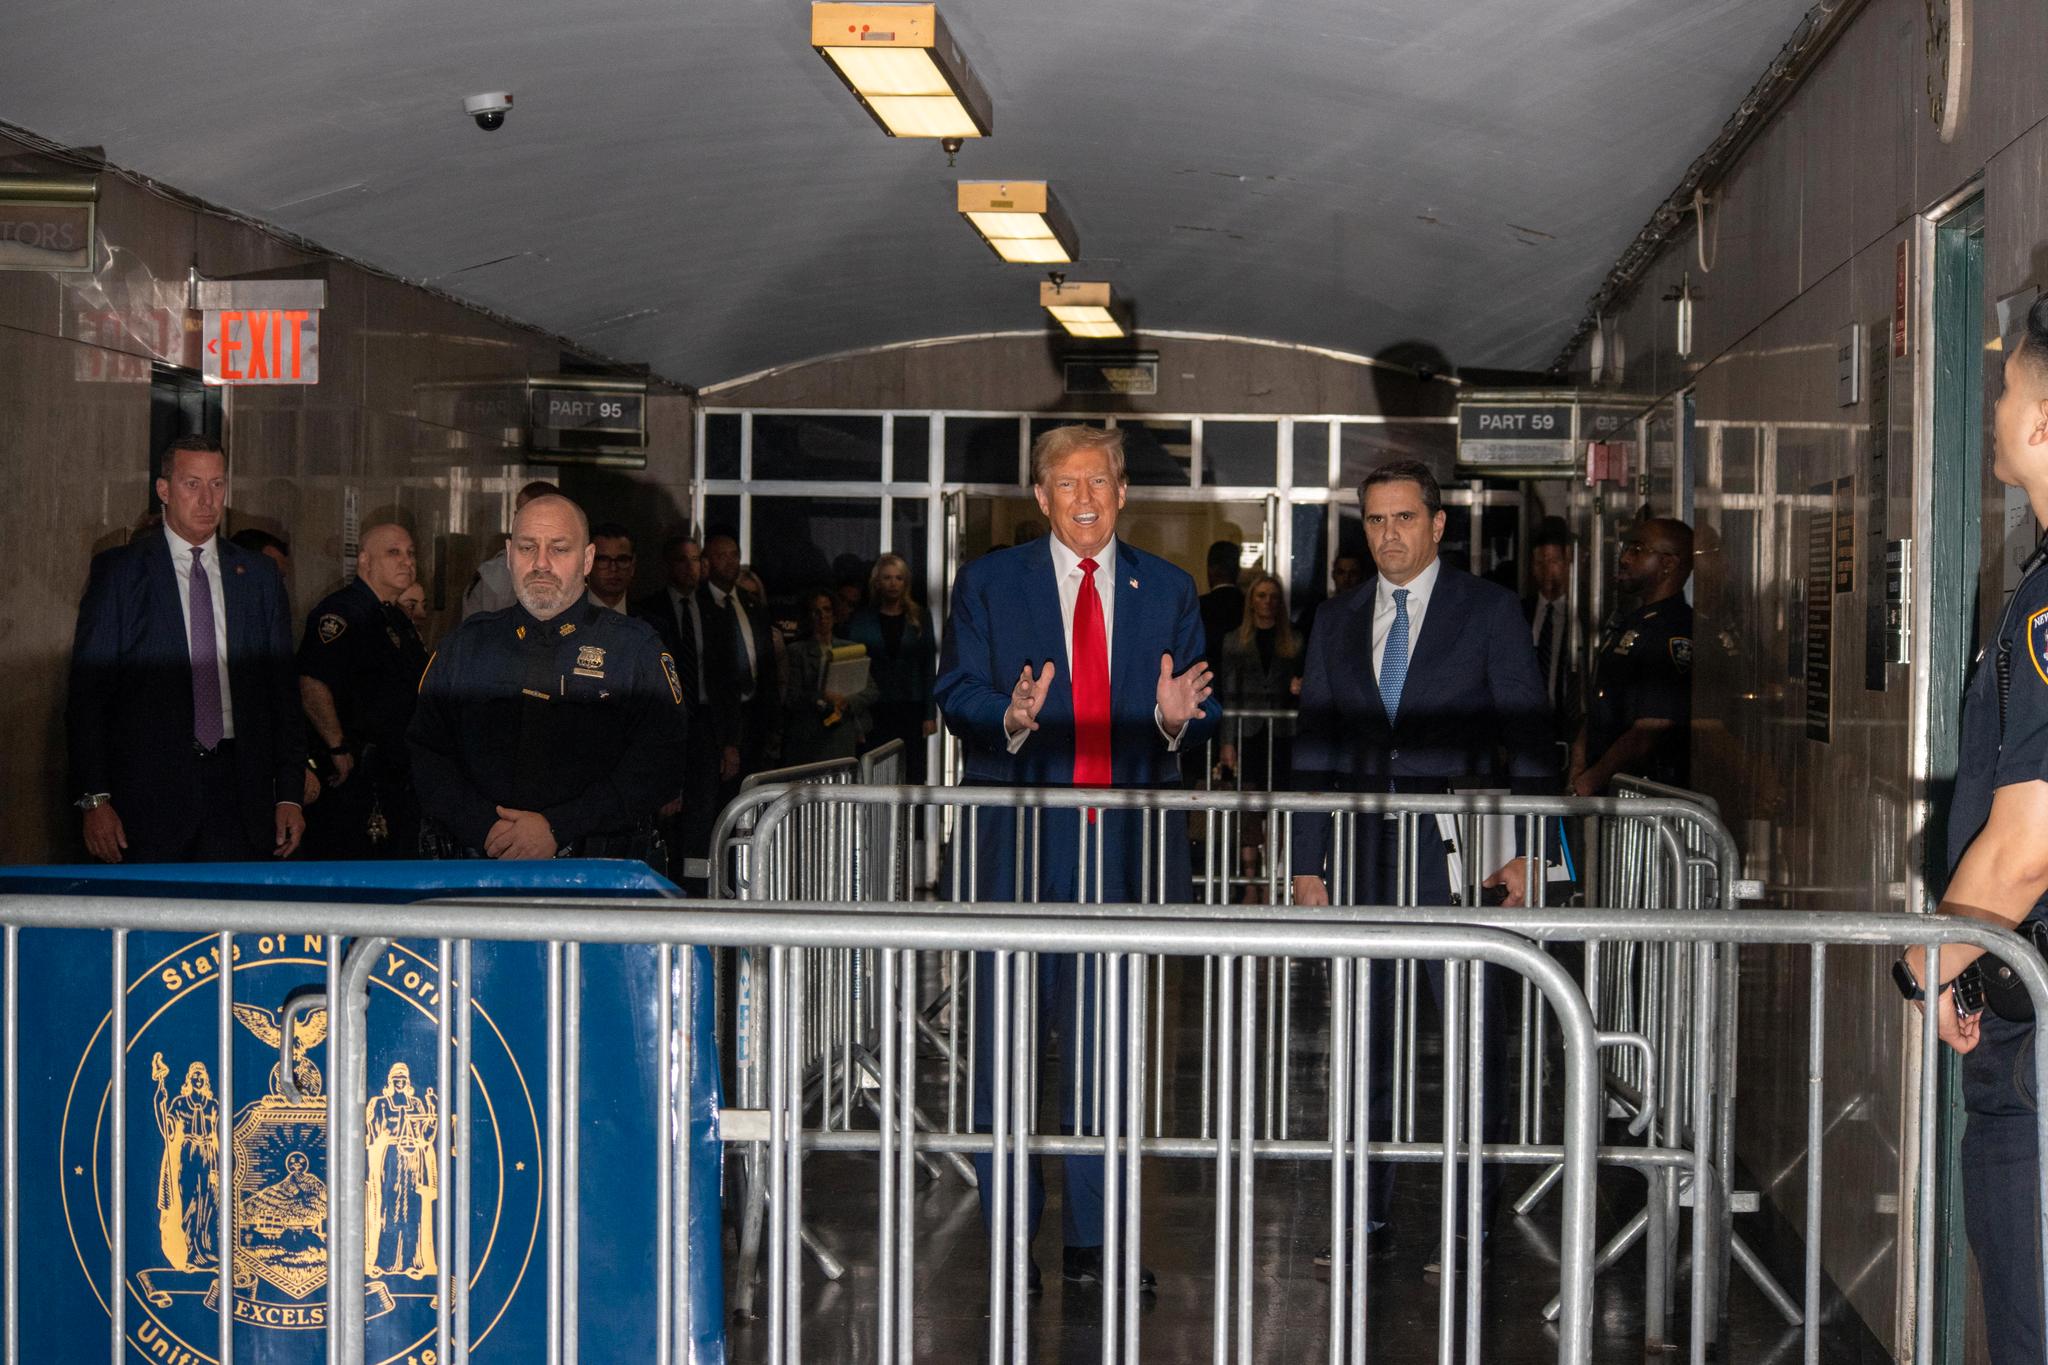 Tidligere president Donald Trump snakket til pressen før han gikk inn i rettssalen i Manhattan.